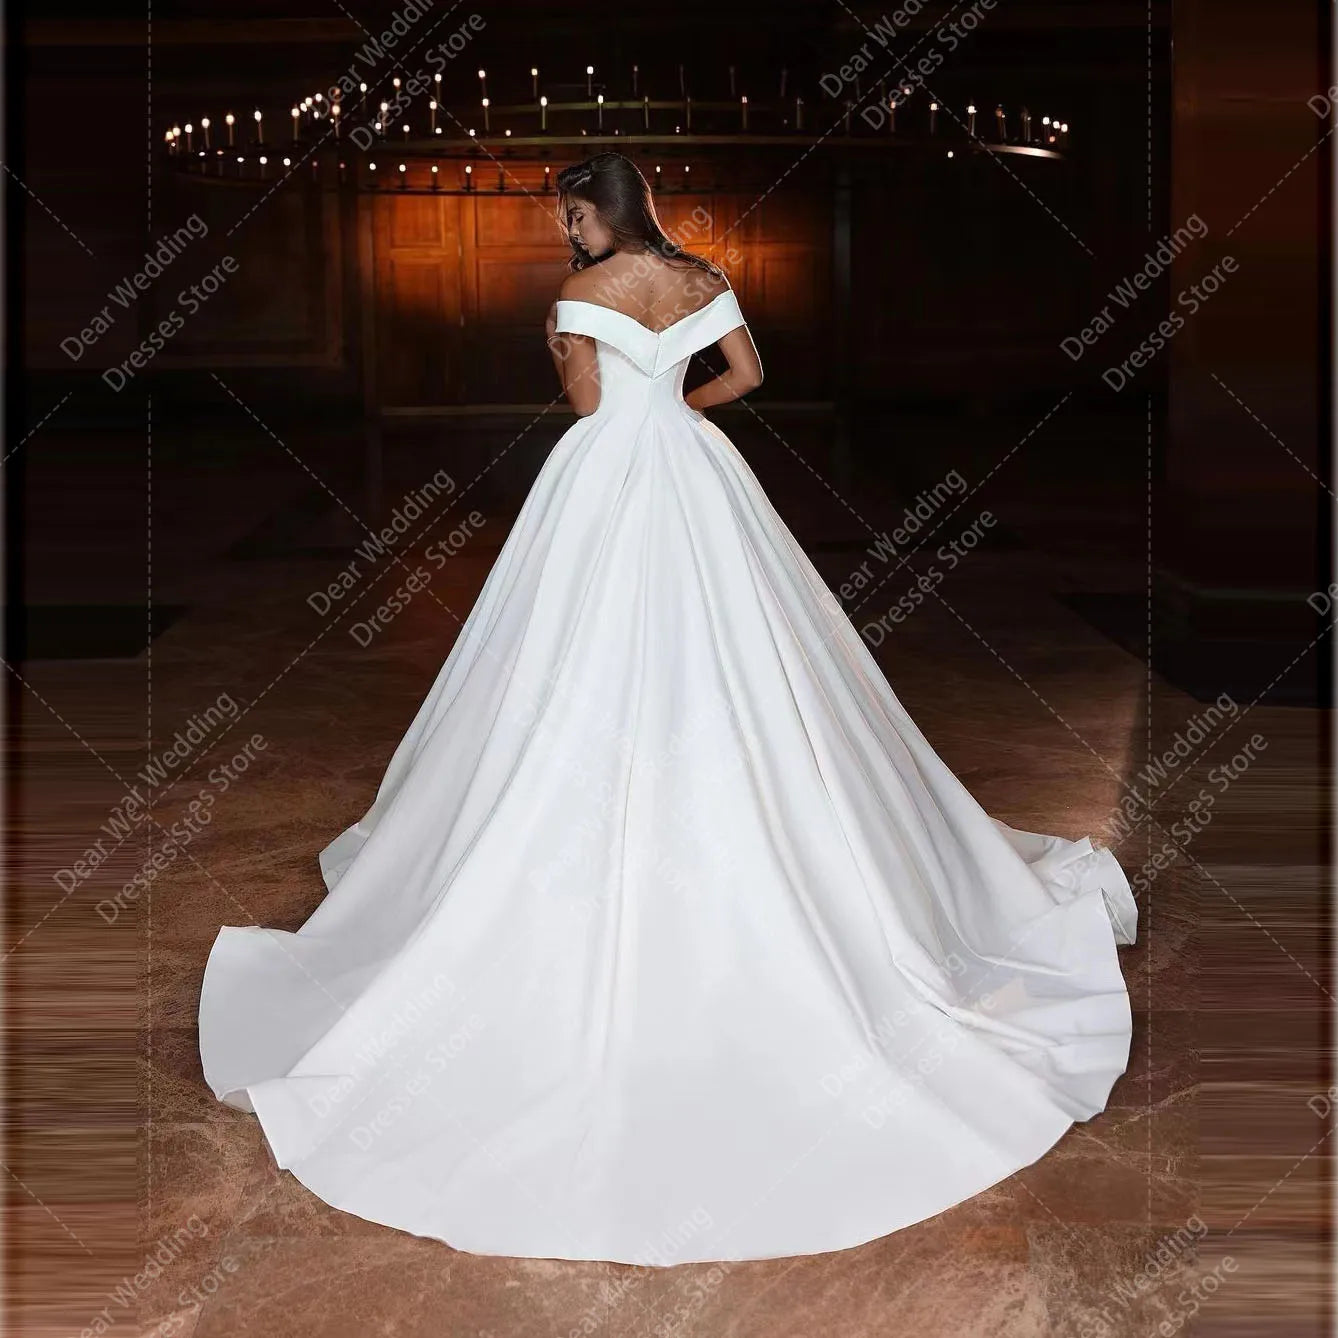 שמלות כלה מדהימות של שורה לאישה מהכתף נ 'צוואר סאטין סאטין רשמי שמלות כלה אופנה רשמית vestidos de novia